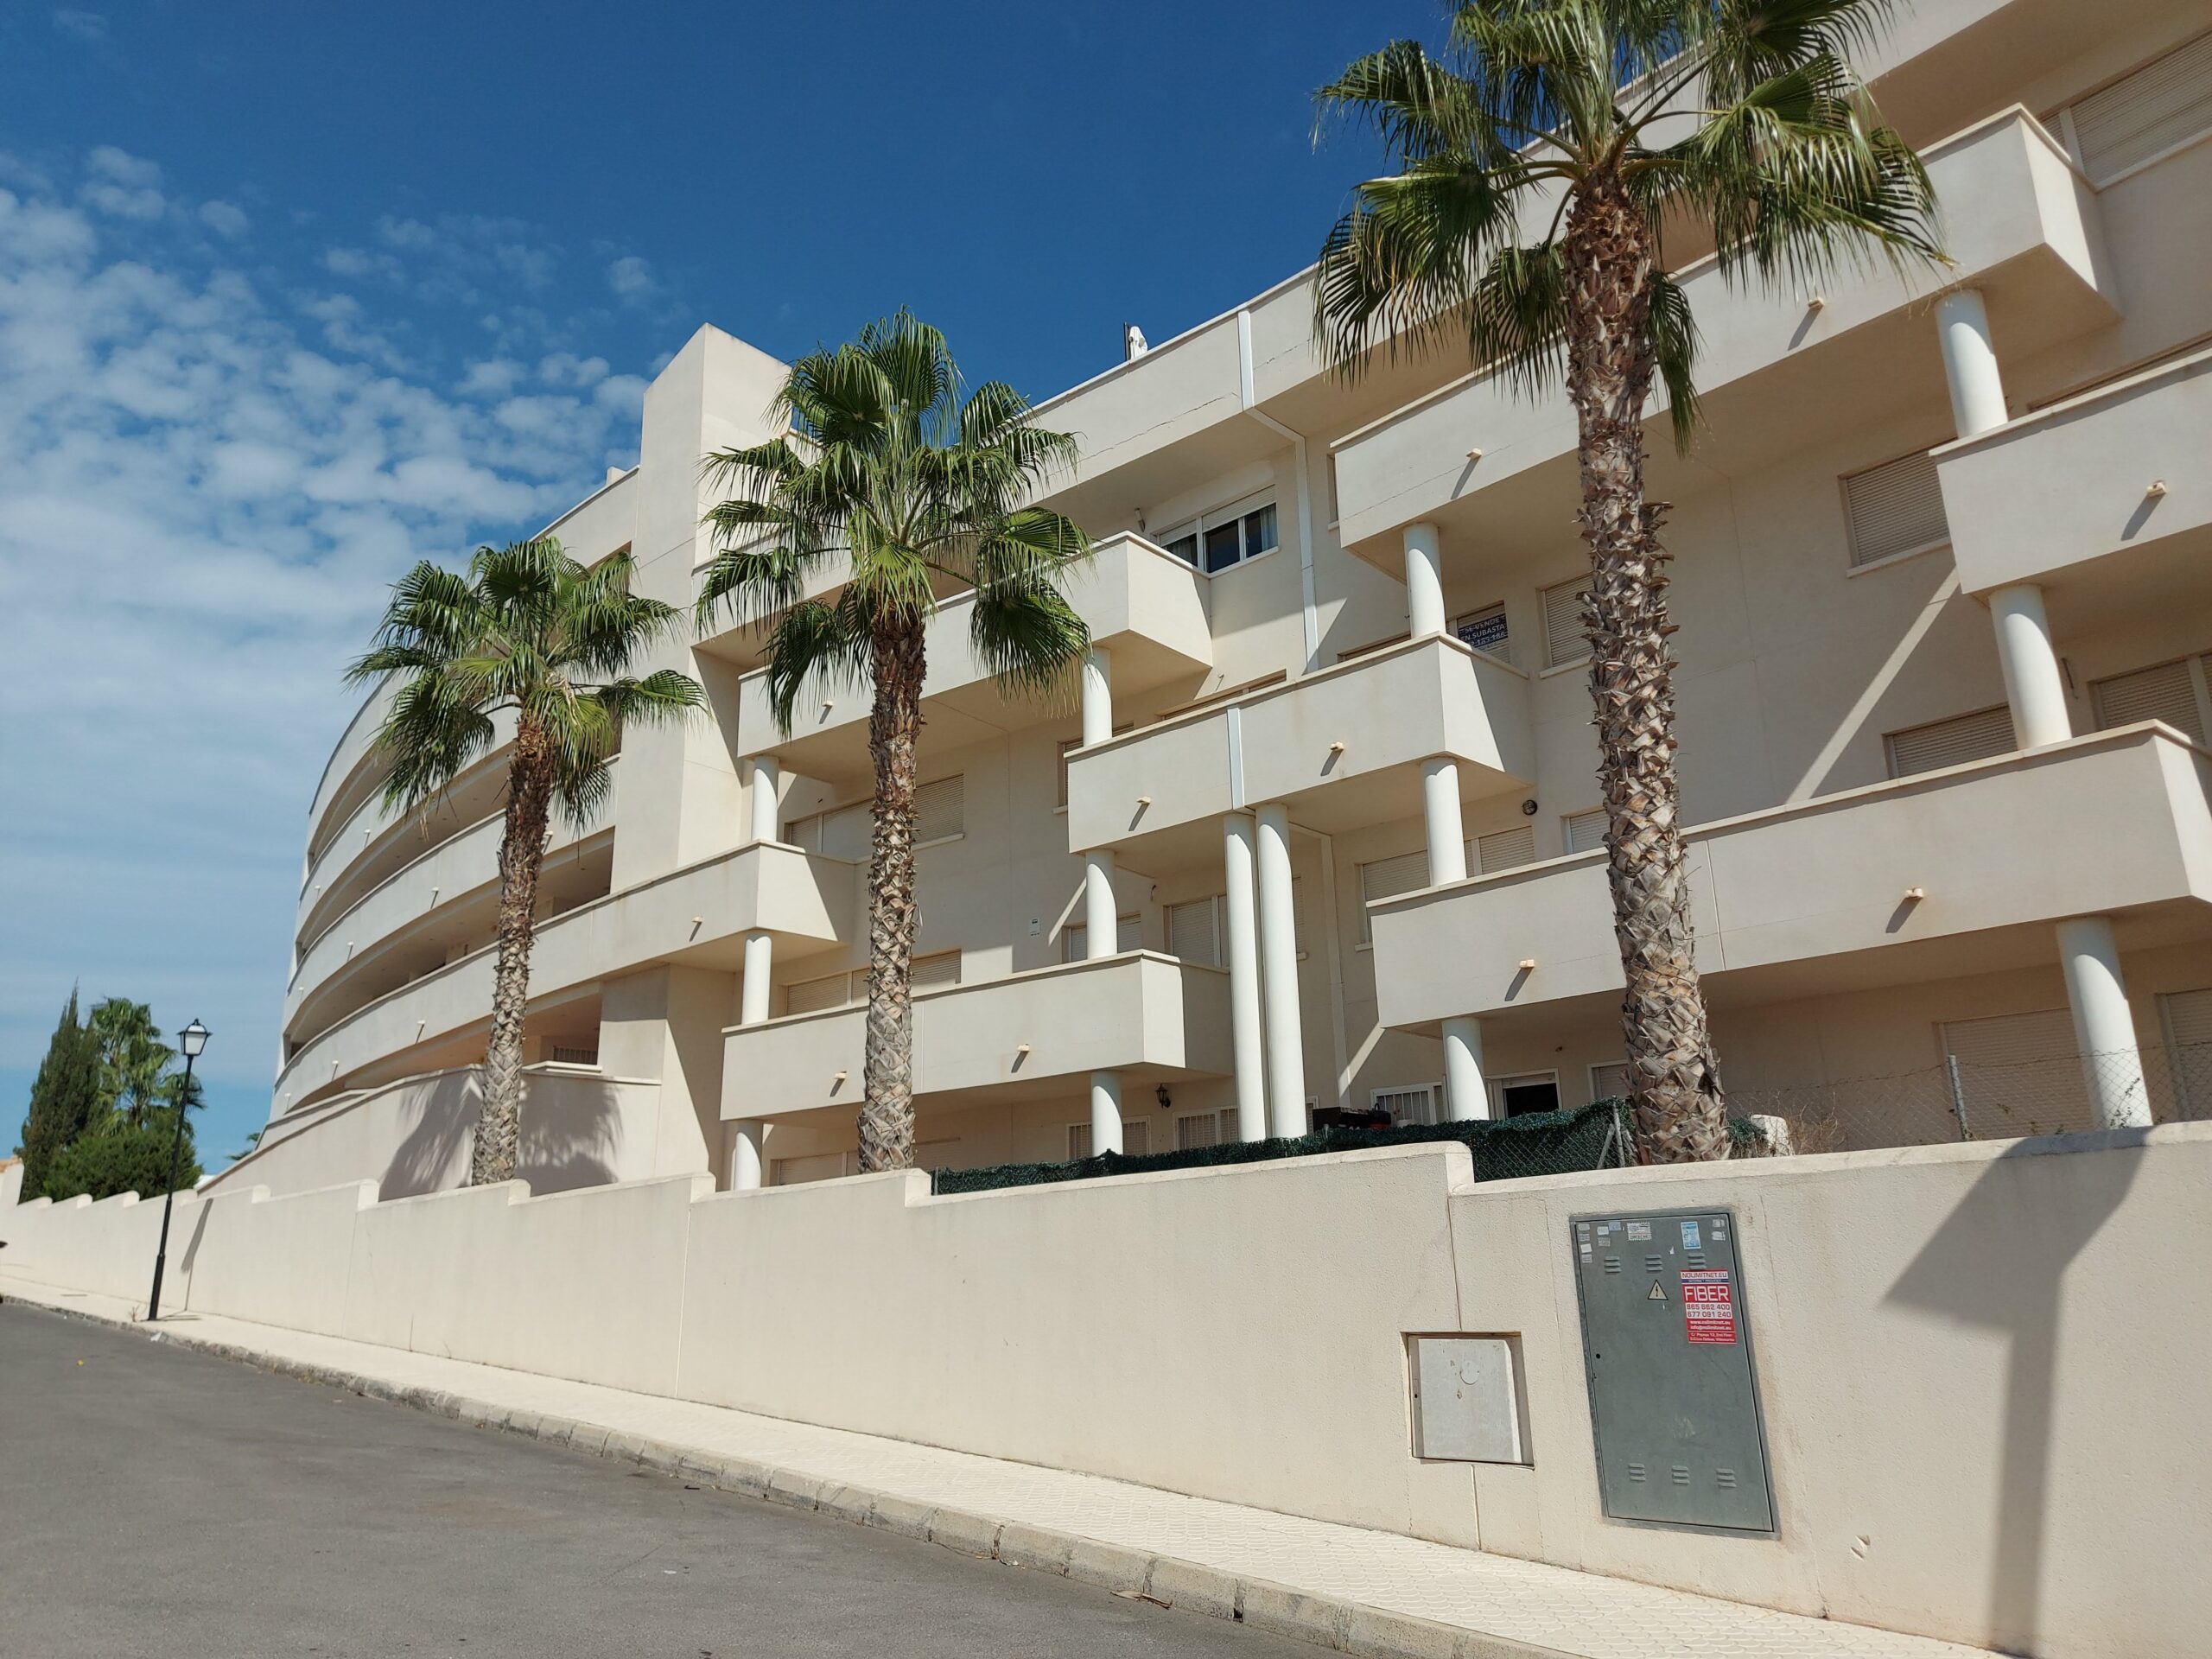 Adecuación de viviendas en Alicante